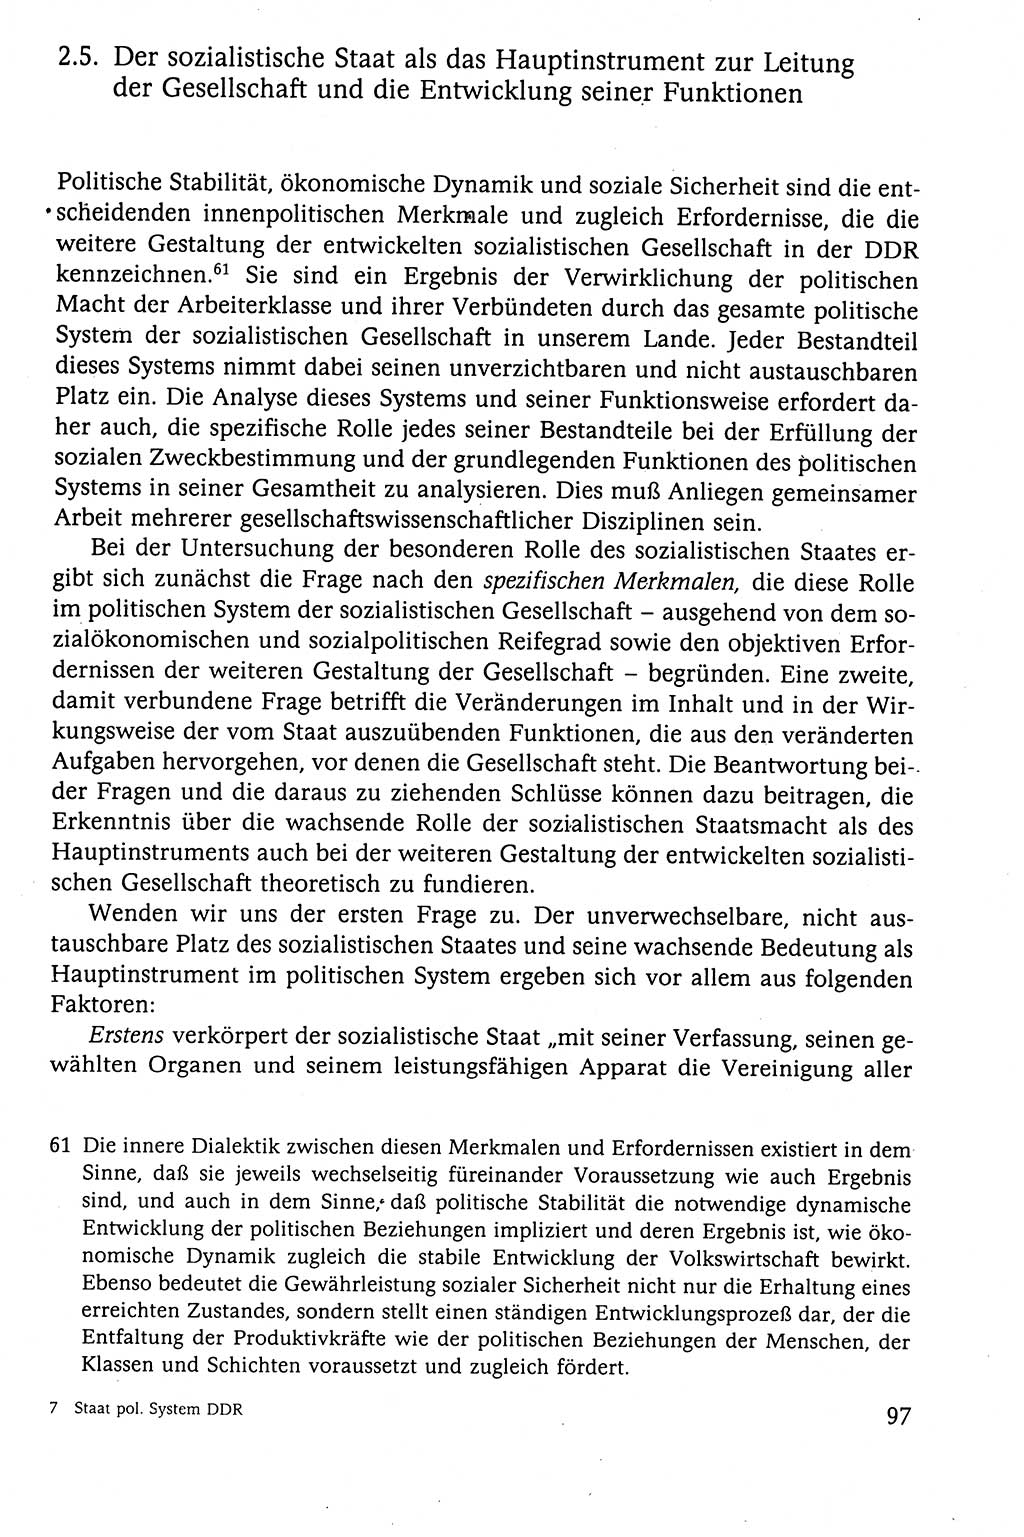 Der Staat im politischen System der DDR (Deutsche Demokratische Republik) 1986, Seite 97 (St. pol. Sys. DDR 1986, S. 97)